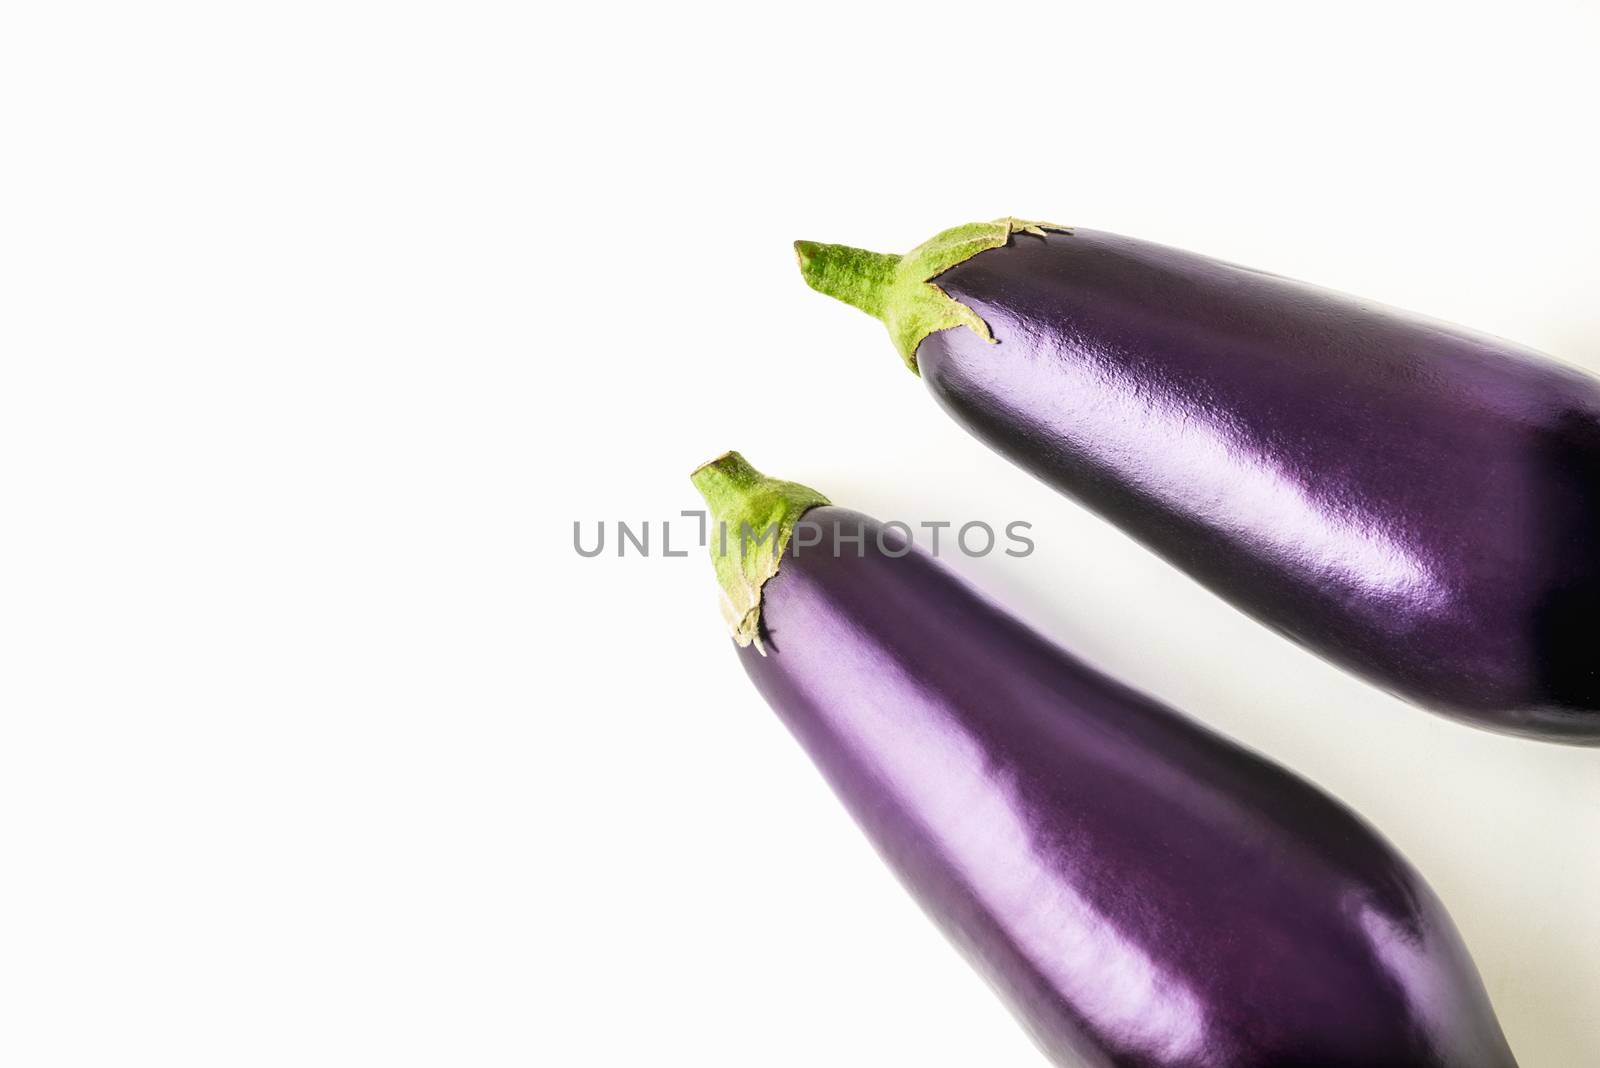 Eggplants on the white background by Deniskarpenkov